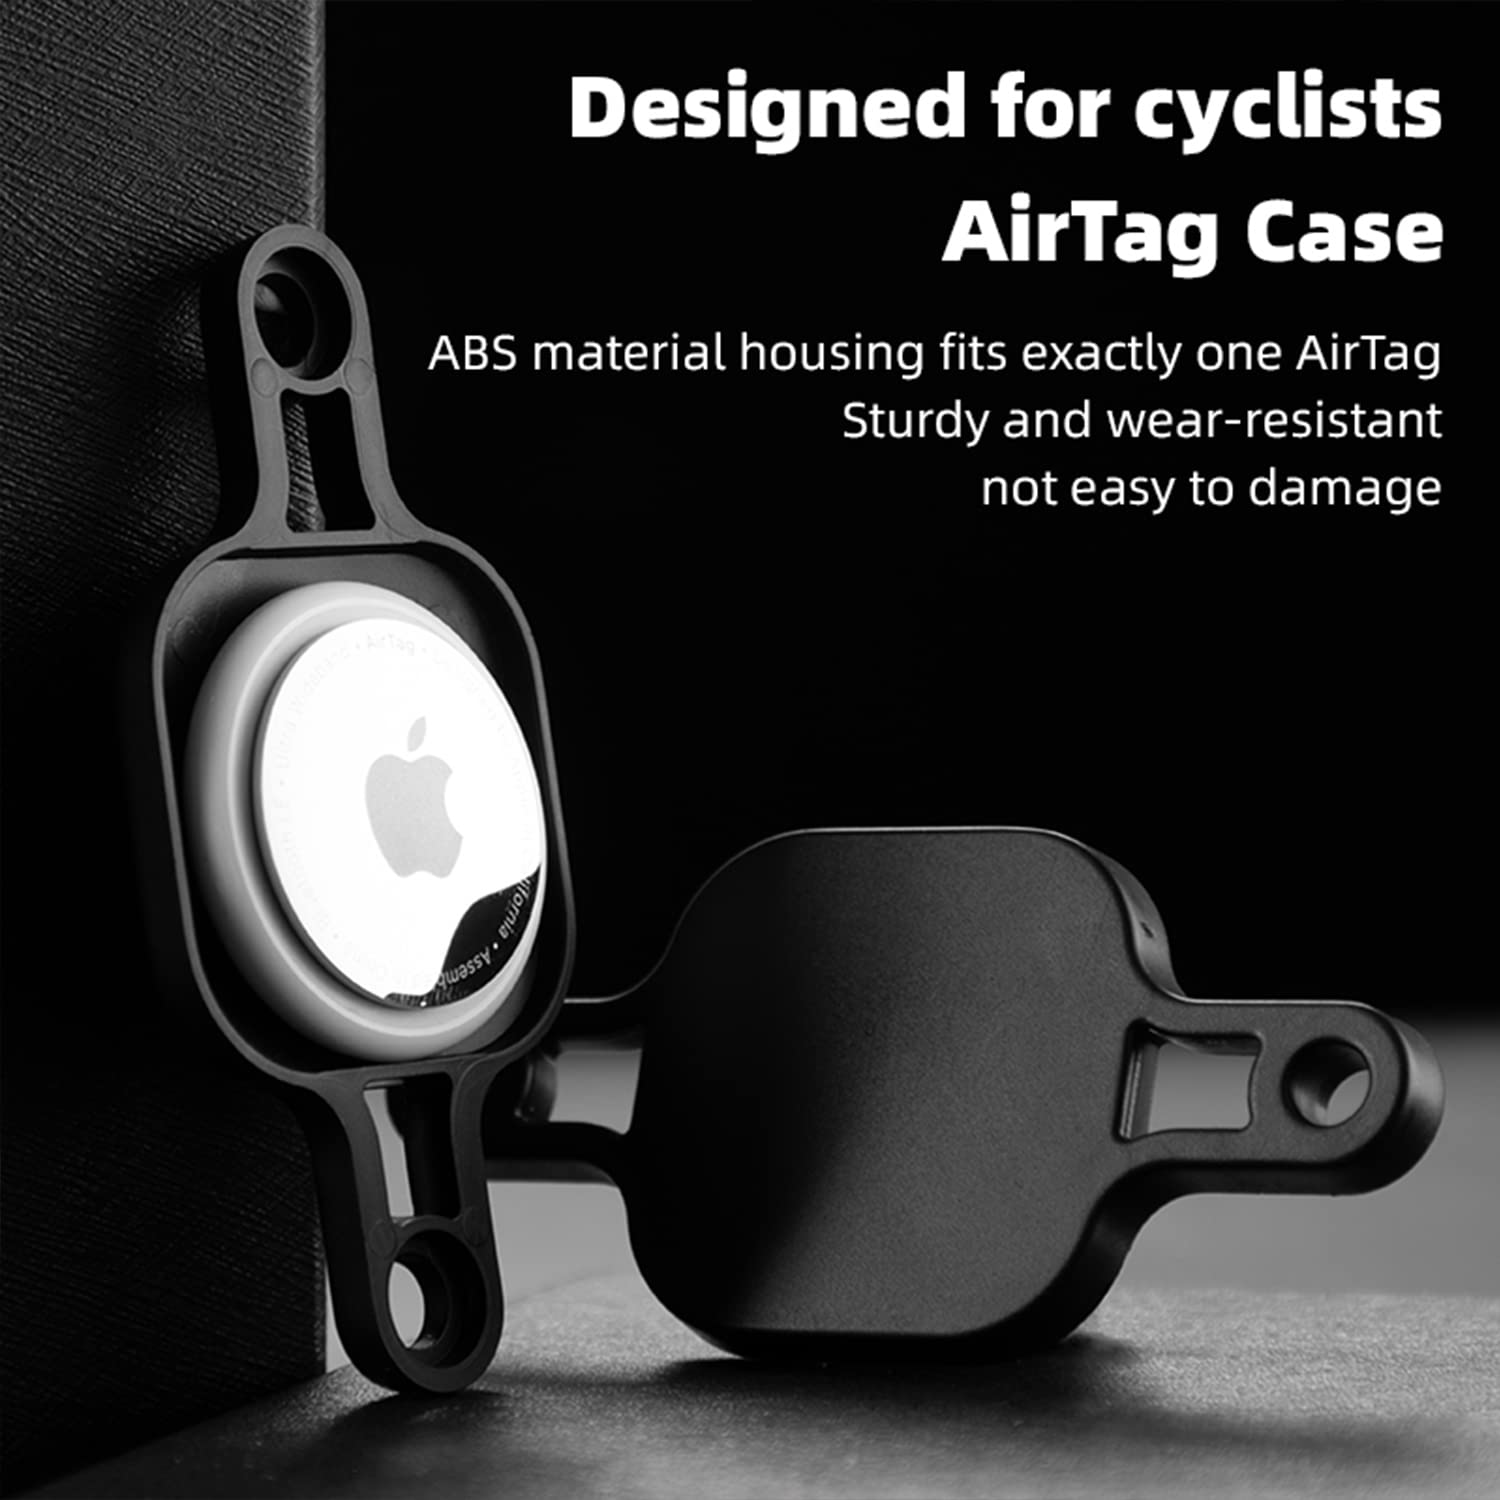 Airtag-Schutz, INF Diebstahlsicherung black für Fahrrad, AirTag